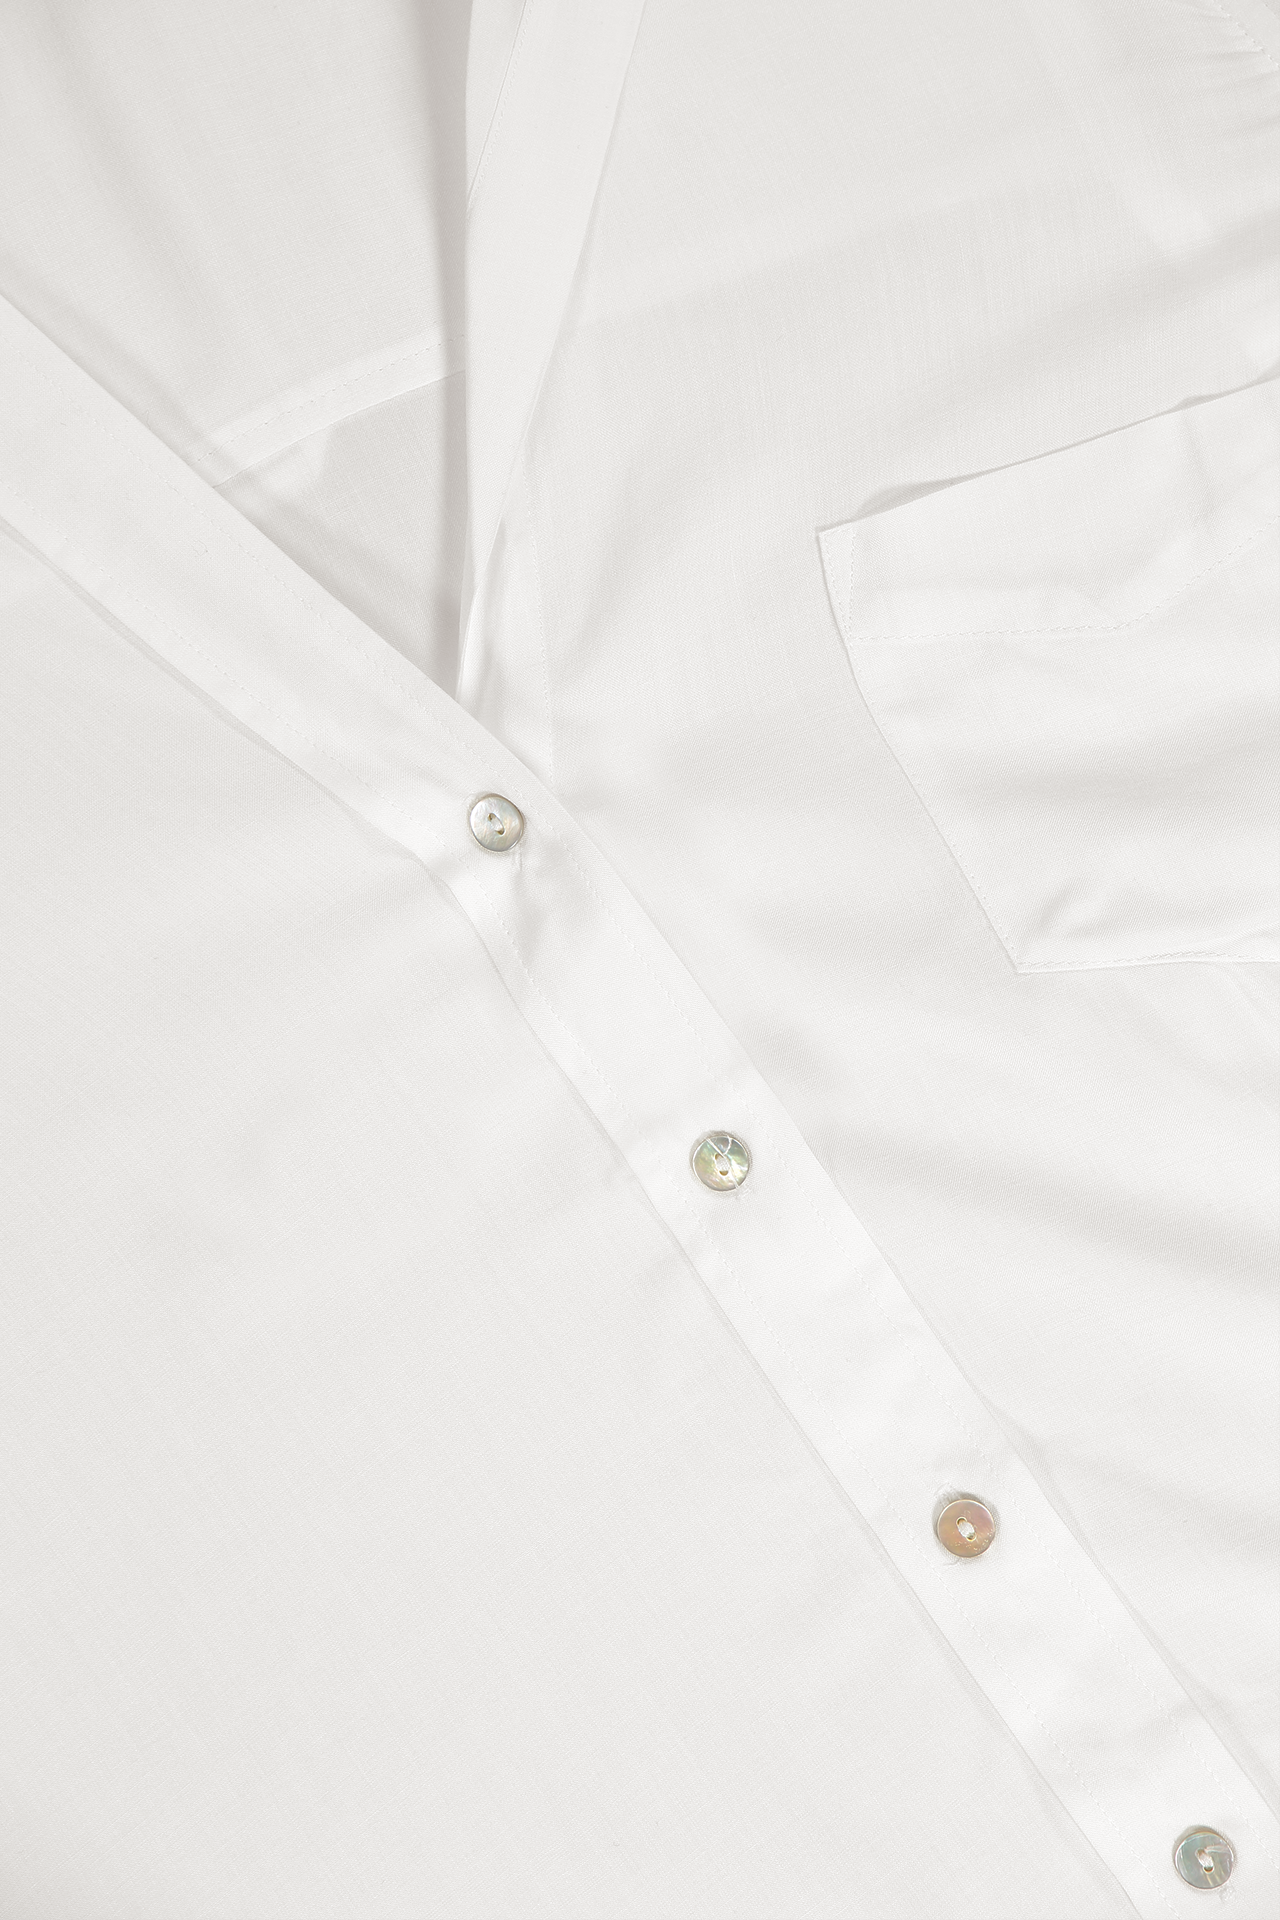 Lagence Ryan 3/4 Sleeve Blouse Off White Collar Detail Image (4615405994099)